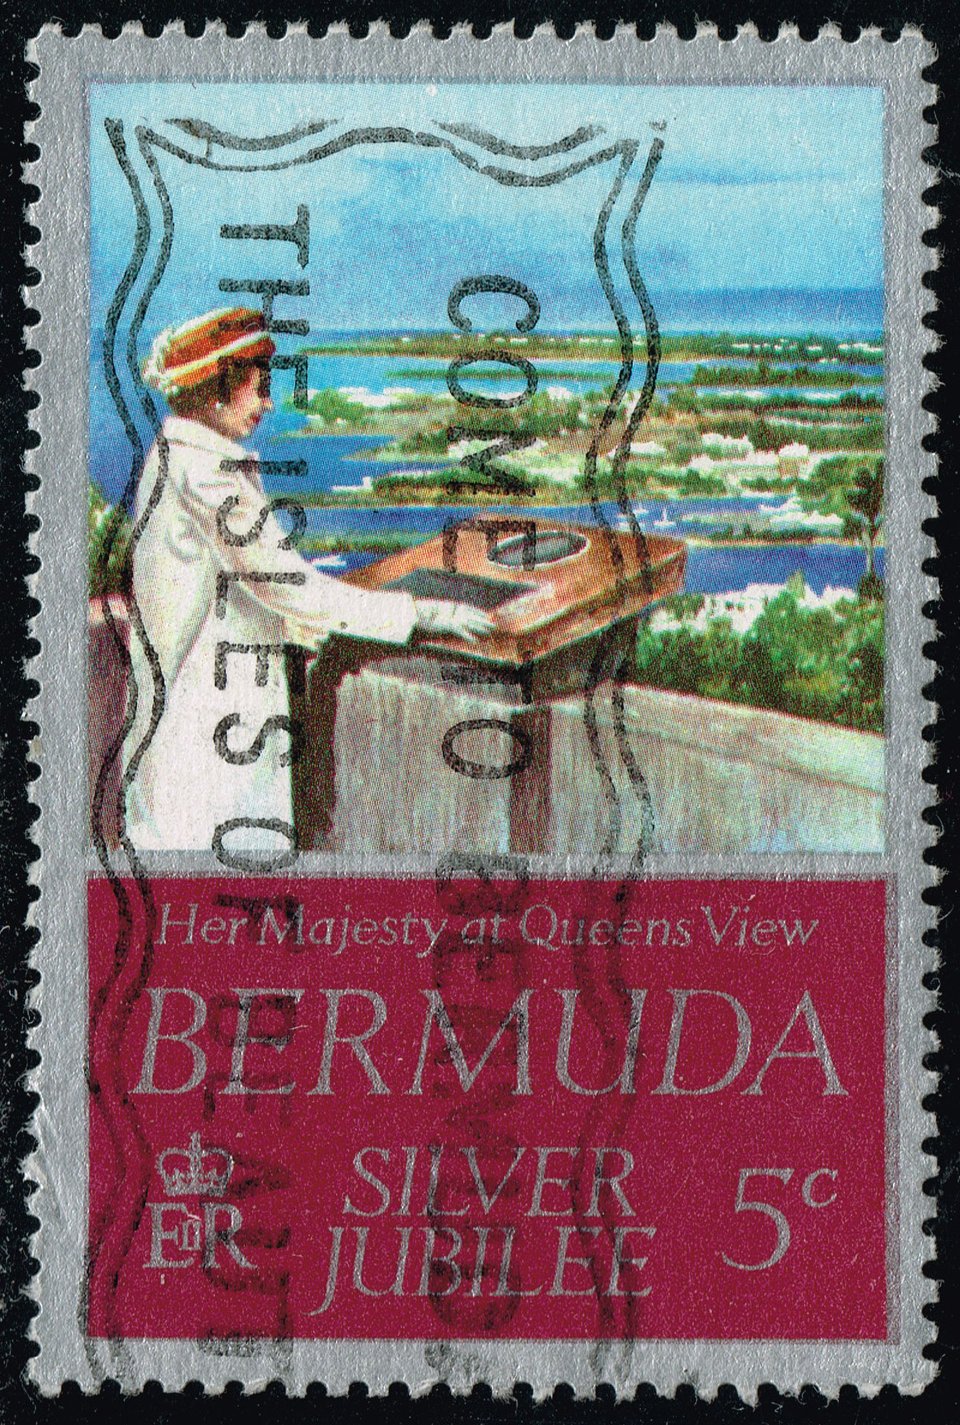 Bermuda #347 Queen's Visit to Bermuda; Used